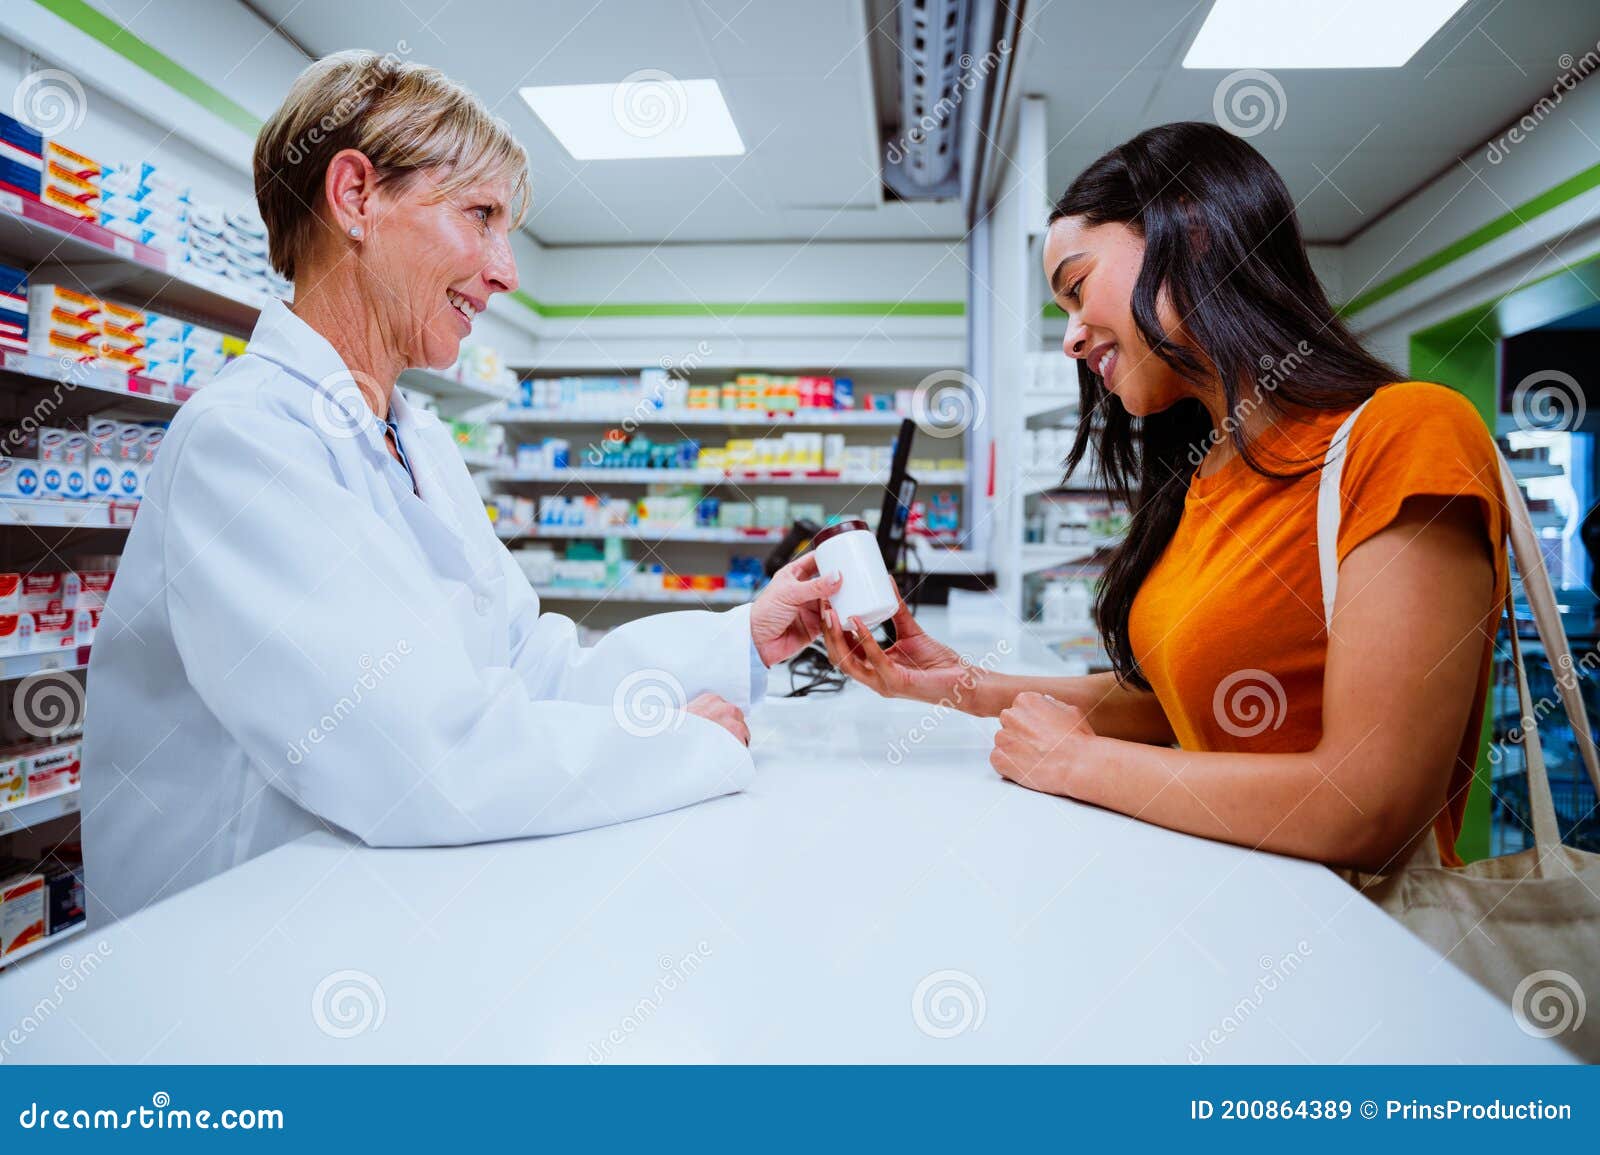 迷人的女人在药店购物高清摄影大图-千库网